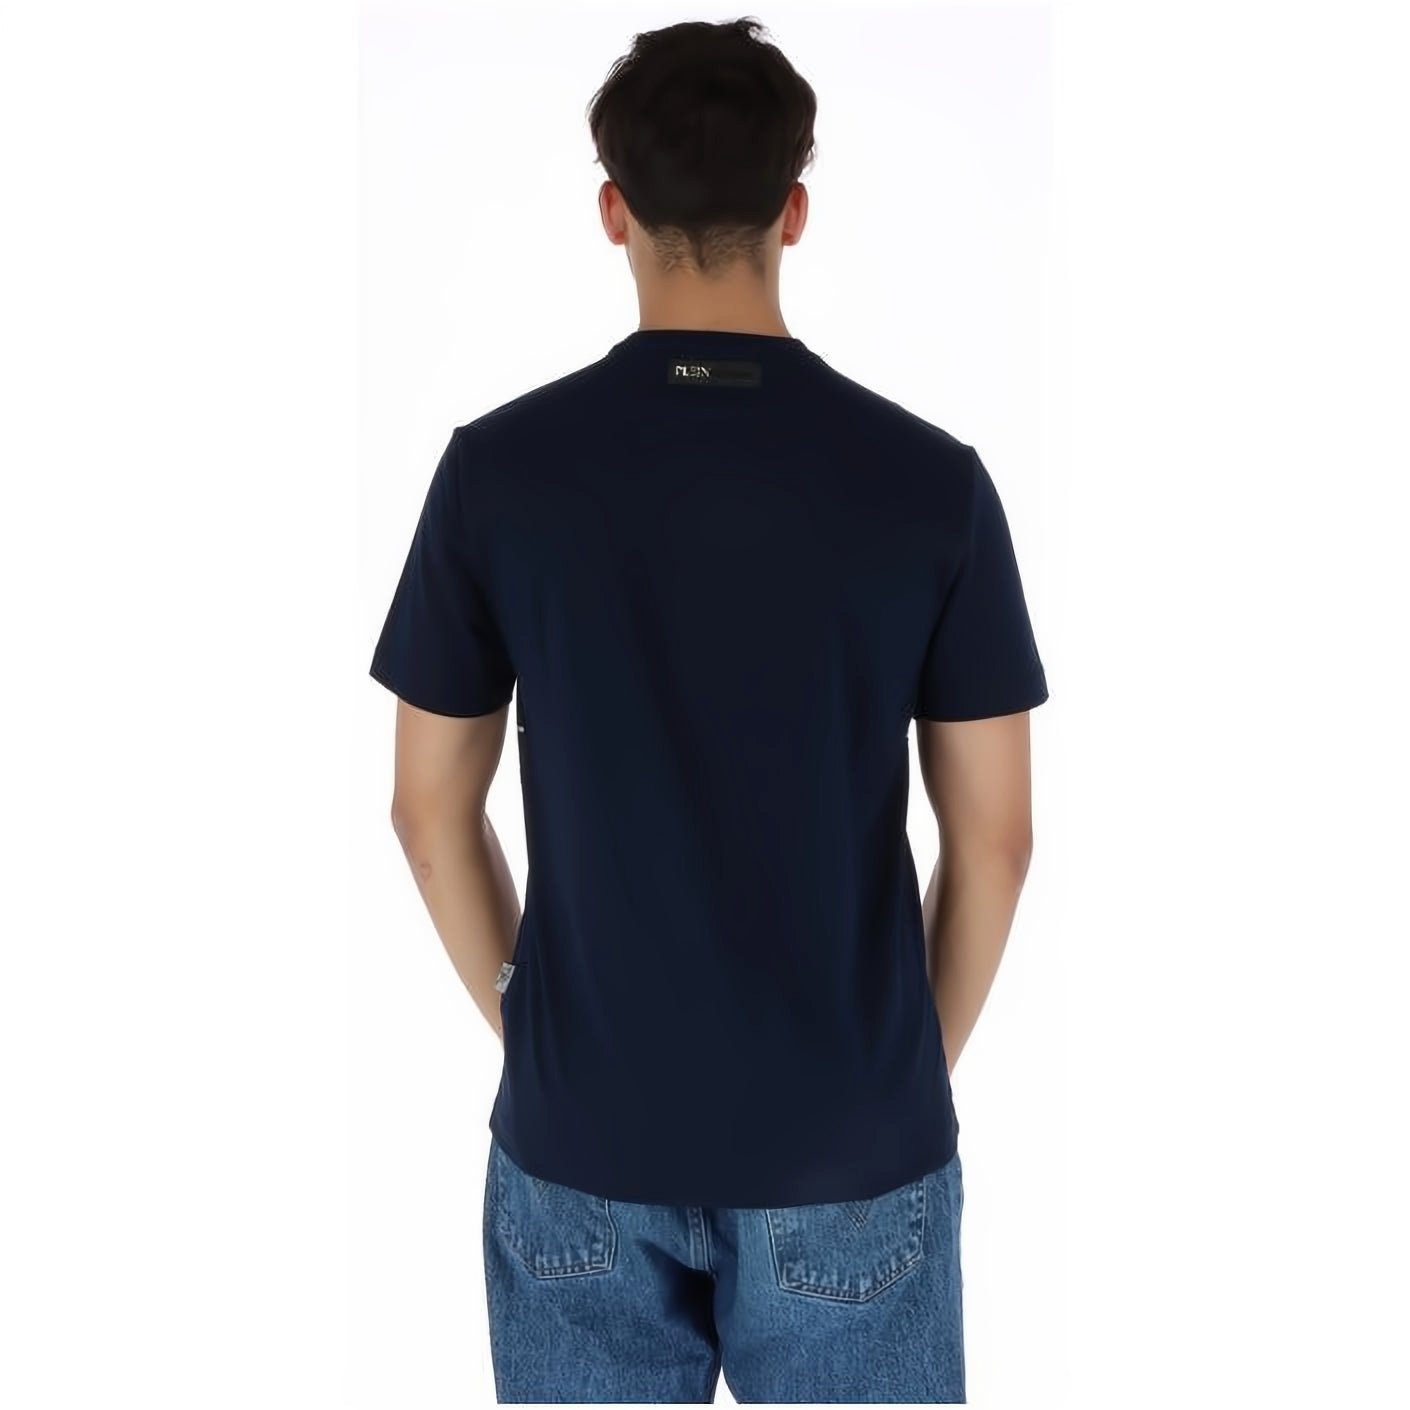 T-Shirt Tragekomfort, Look, vielfältige ROUND PLEIN Farbauswahl NECK hoher SPORT Stylischer